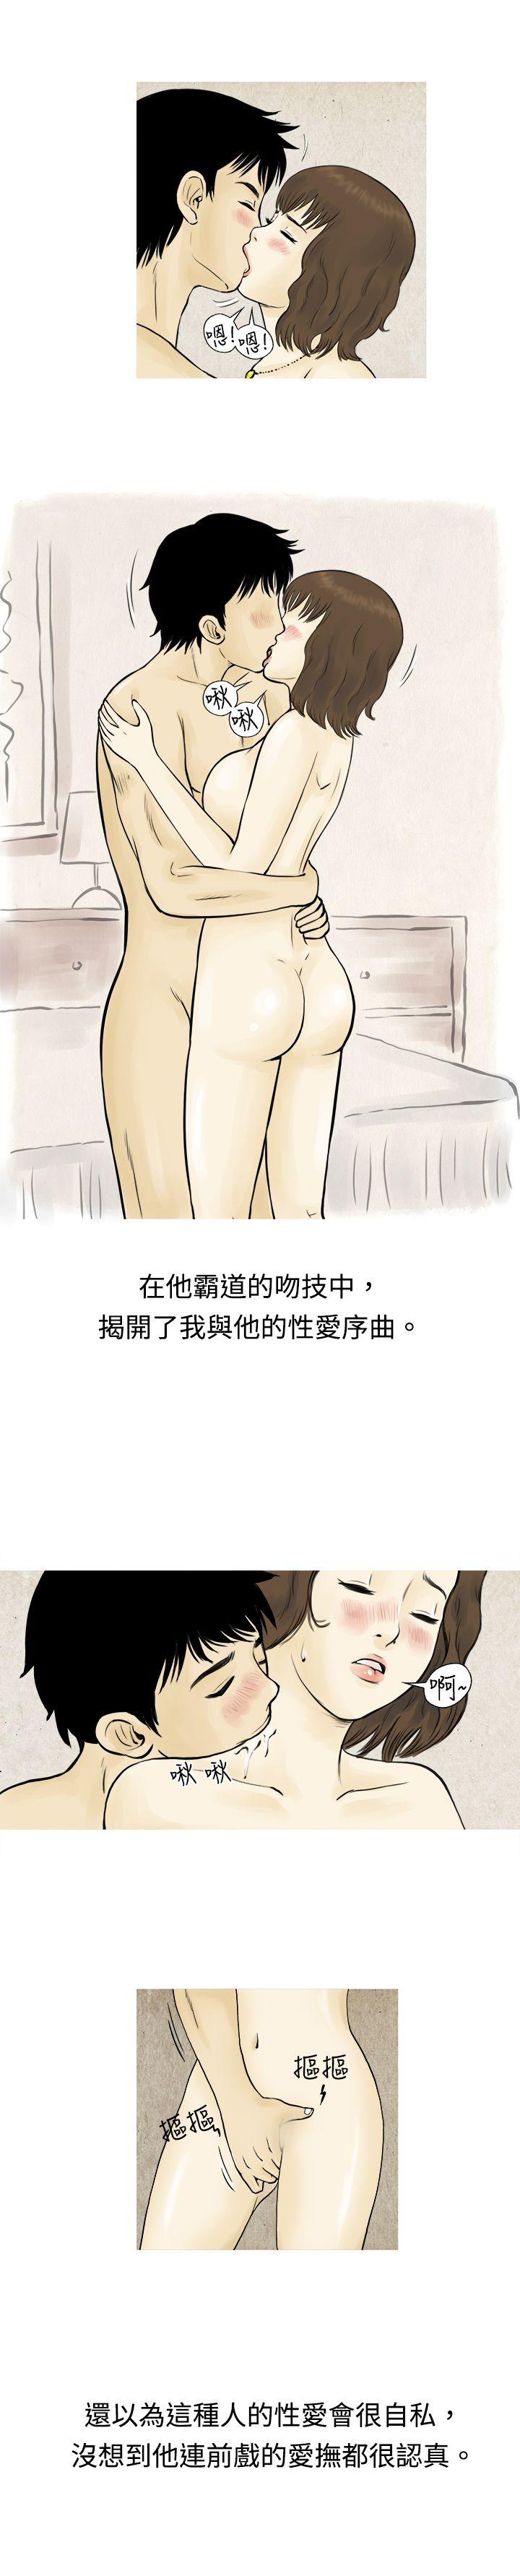 秘密Story  遇到渣男的旅馆逃亡记(上) 漫画图片6.jpg